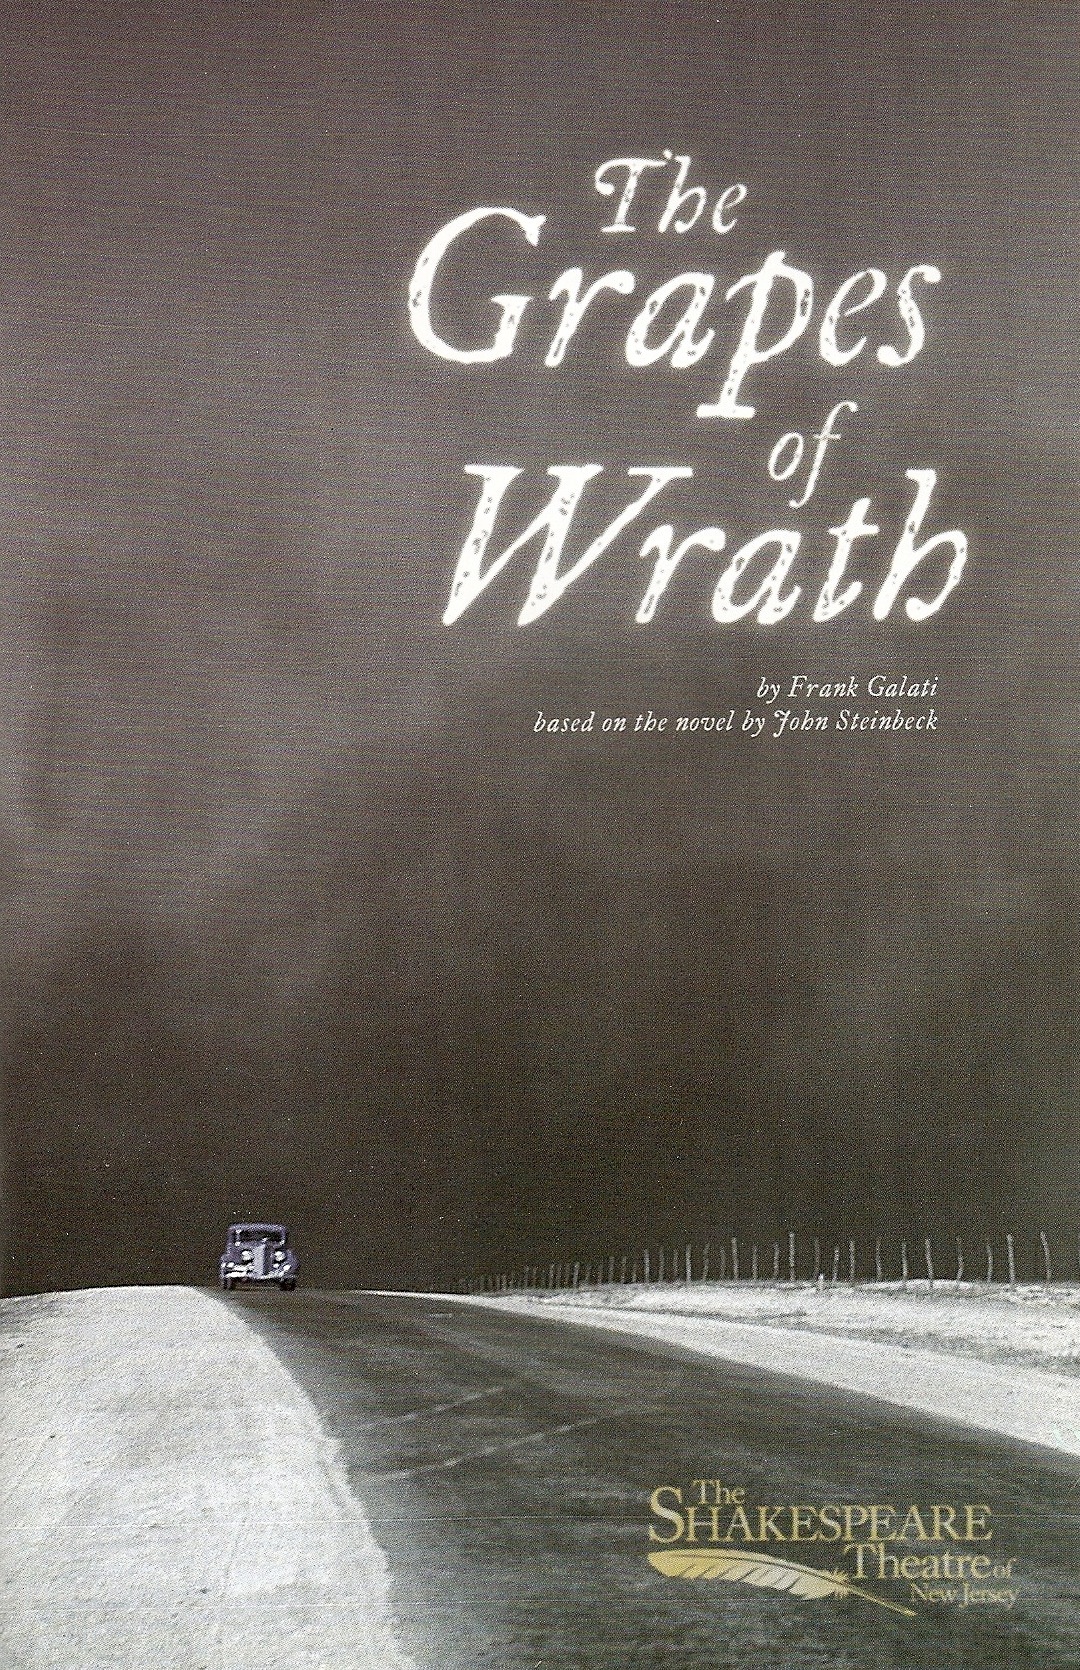 grapesofwrath_cover.jpg